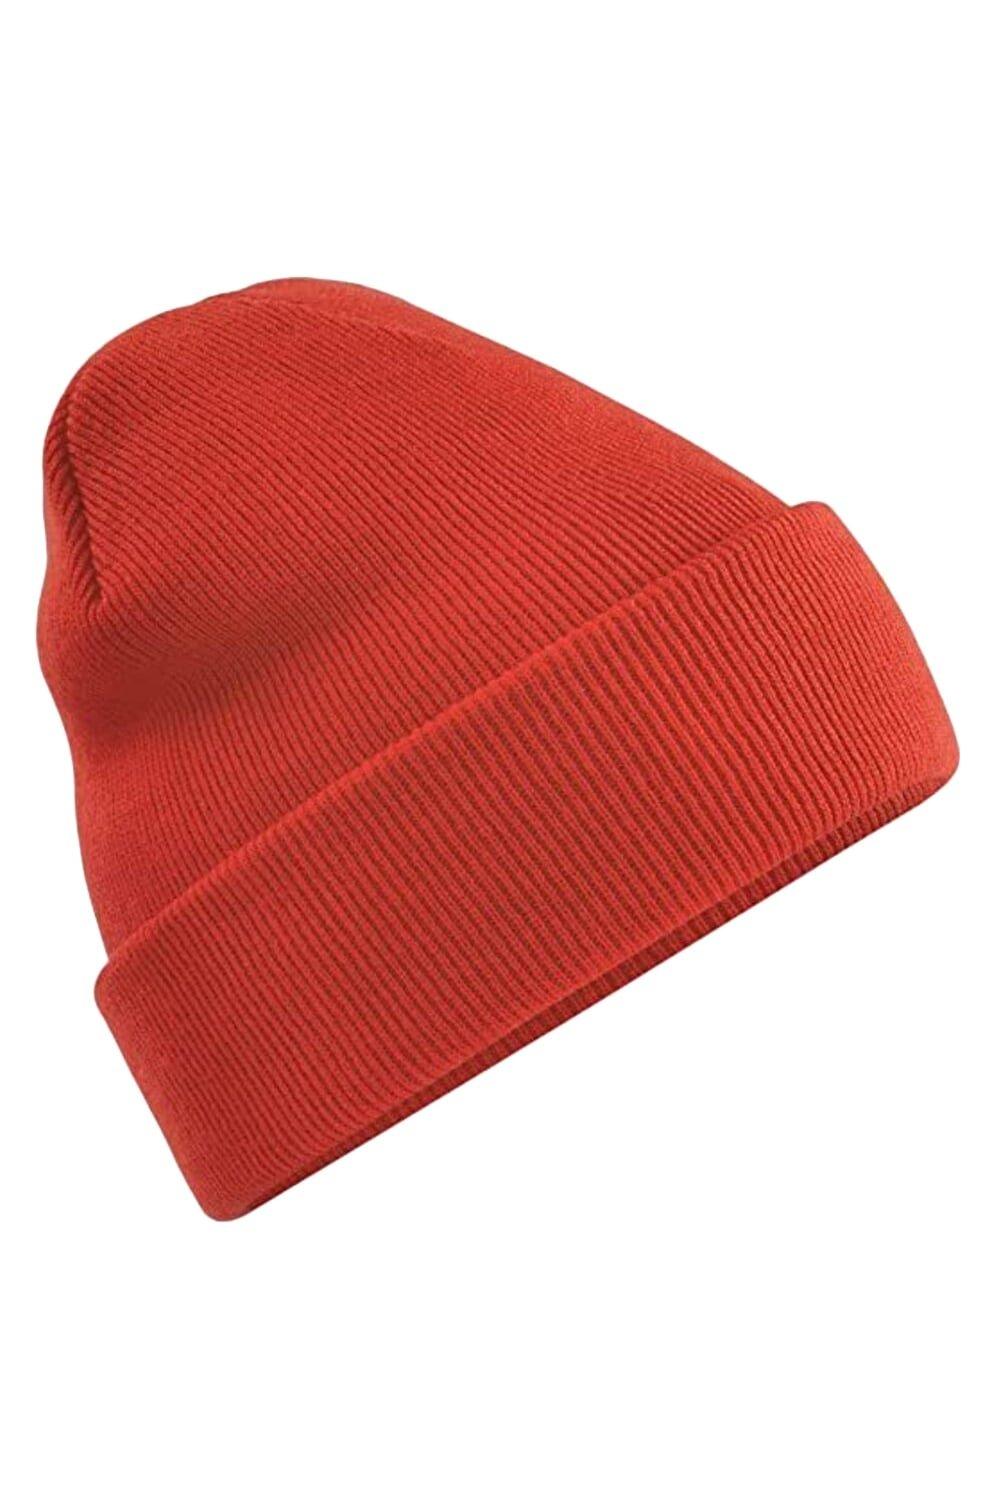 Оригинальная шапка с манжетами Beechfield, красный оригинальная зимняя шапка бини с манжетами beechfield красный